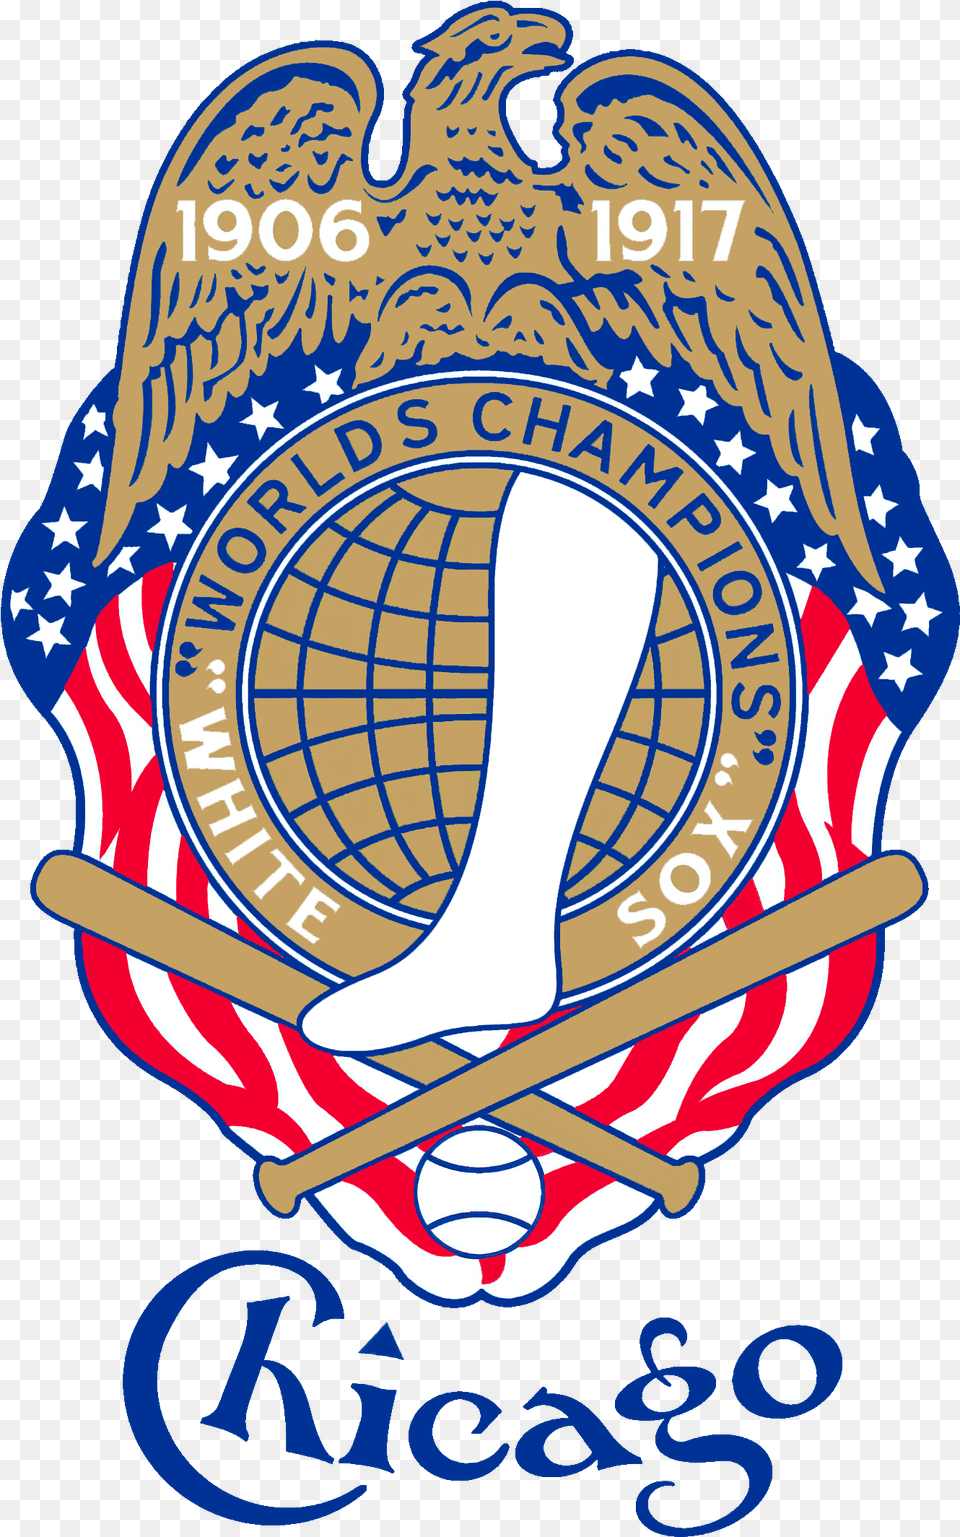 Graphic Design, Badge, Logo, Symbol, Emblem Png Image